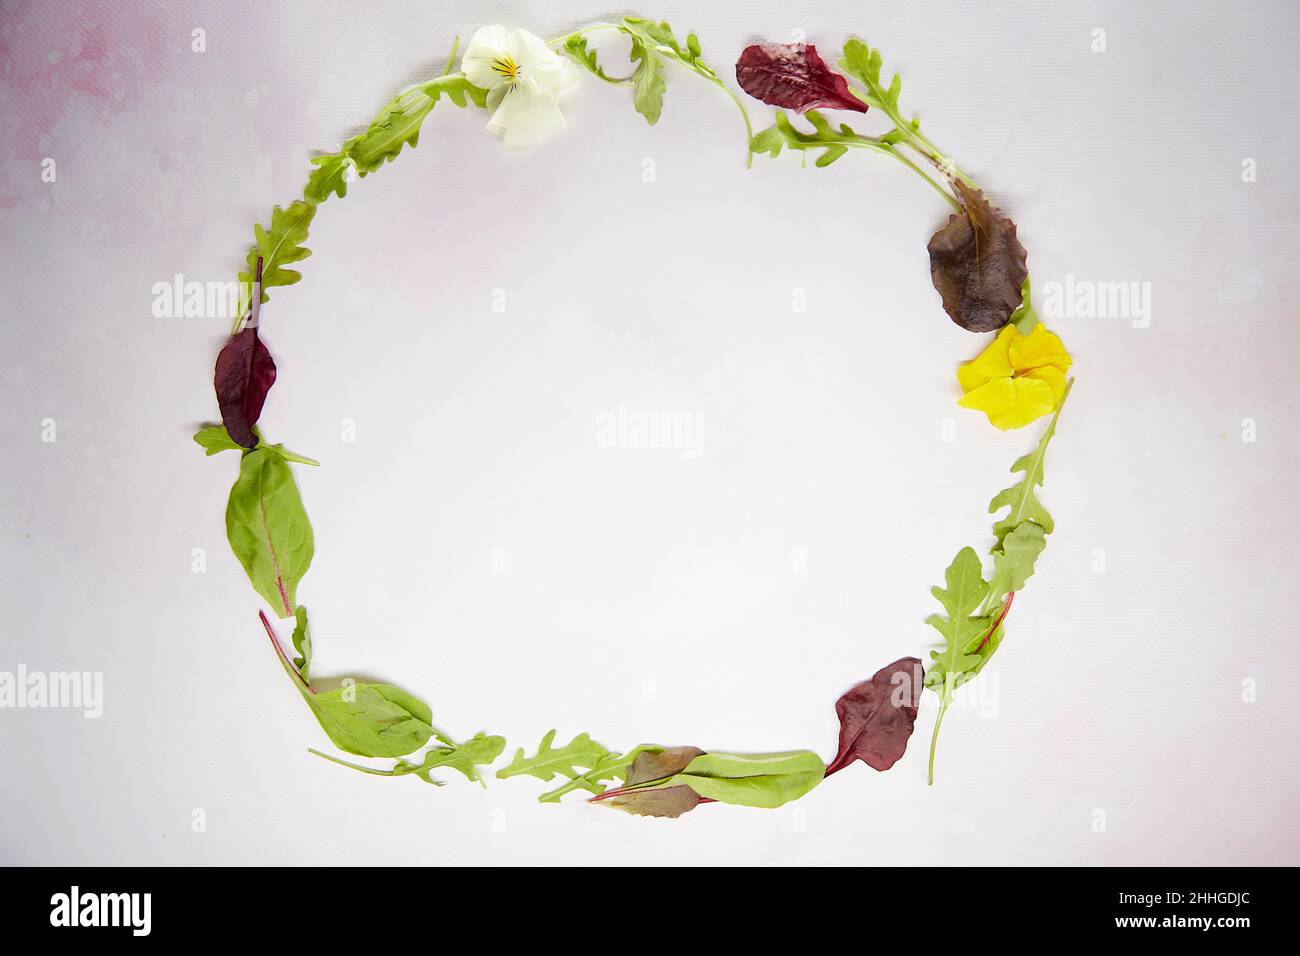 Salatmischung Kreis: Rucola, Mangold, Bullen Blut, Blumen. Gesundes Kochen und richtiges Ernährungskonzept. Hintergrund der Speisen. Natürliche Kräuter Draufsicht. Speicherplatz kopieren Stockfoto